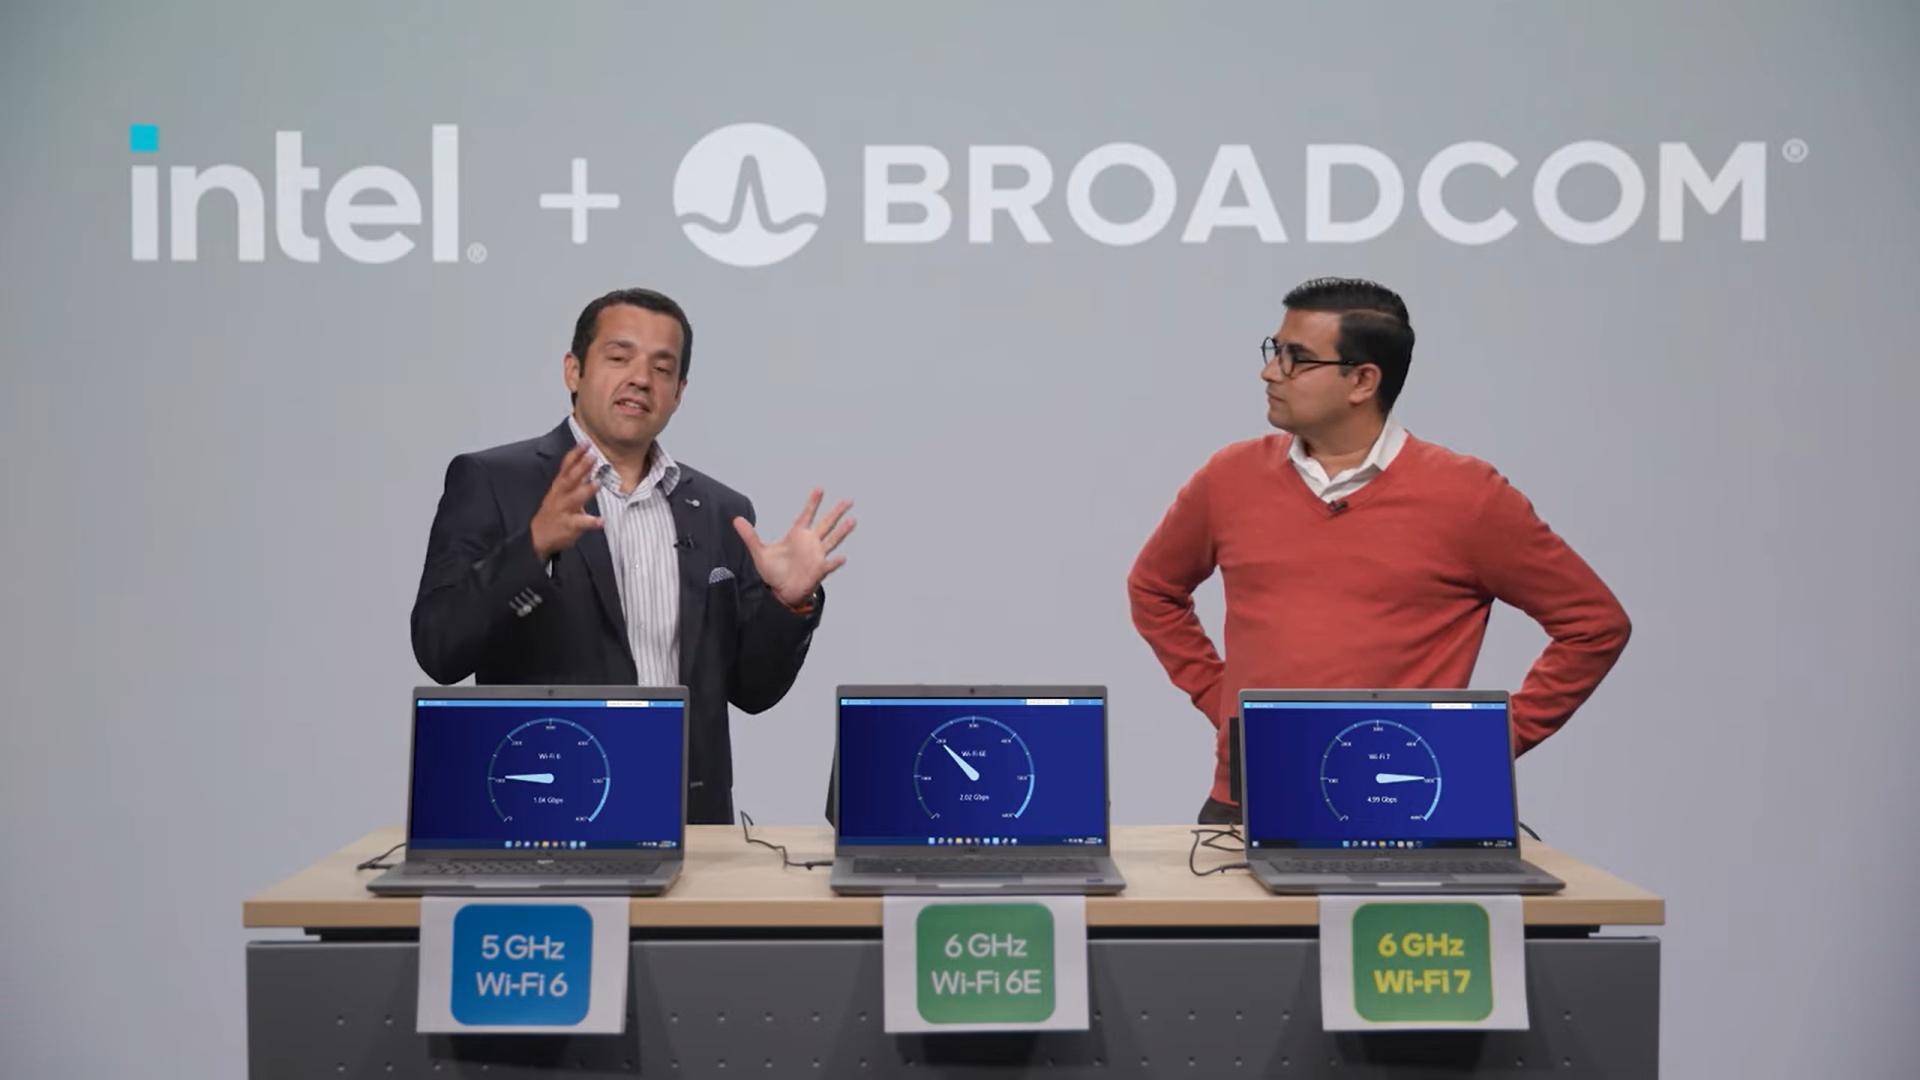 Intel Broadcom ทดสอบระบบ Wi-Fi 7 (802.11be) ความเร็วเกิน 5 Gbps เตรียมจัดจำหน่ายช่วงครึ่งปีหลังของปี 2023 